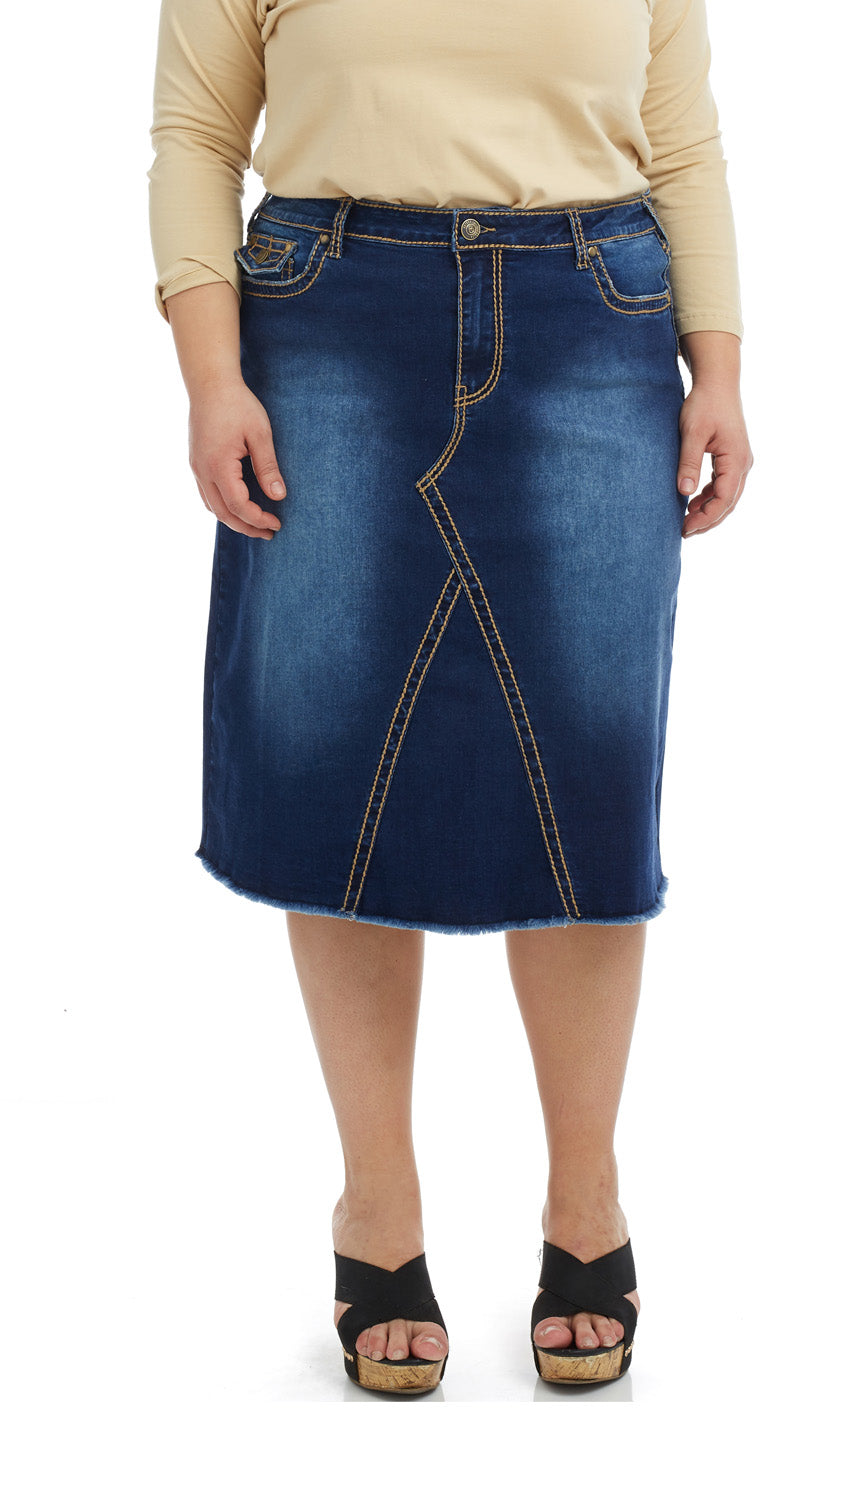 Esteez VICTORIA Skirt - Modest Below the Knee A-line Flary Jean Skirt for Women - BLUE